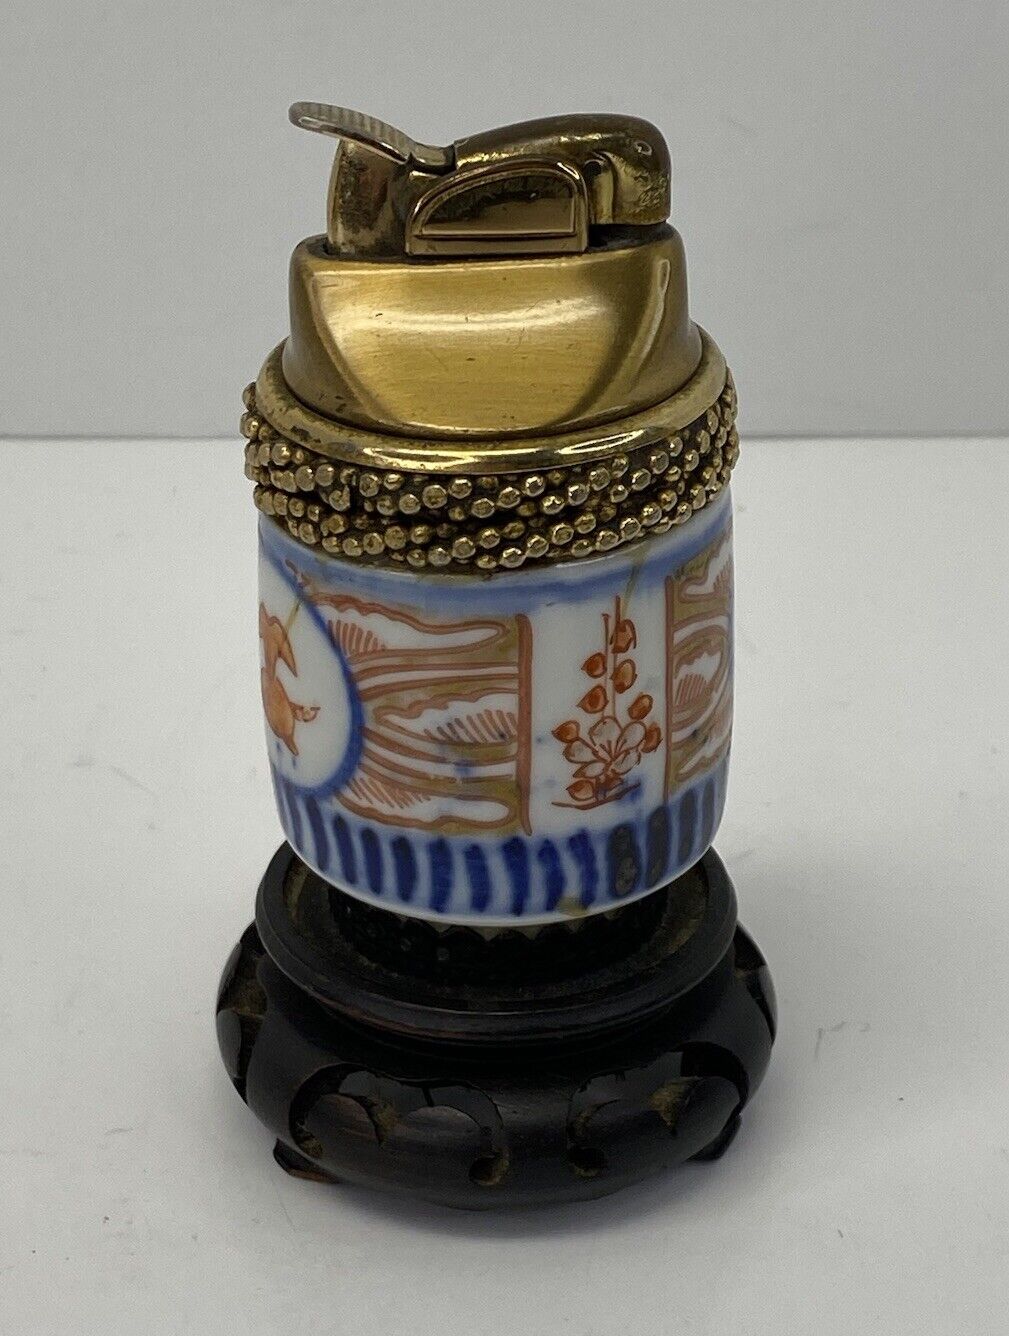 Vintage Antique Japanese Brass Imari Porcelain Lighter On Wooden Base 4.5”